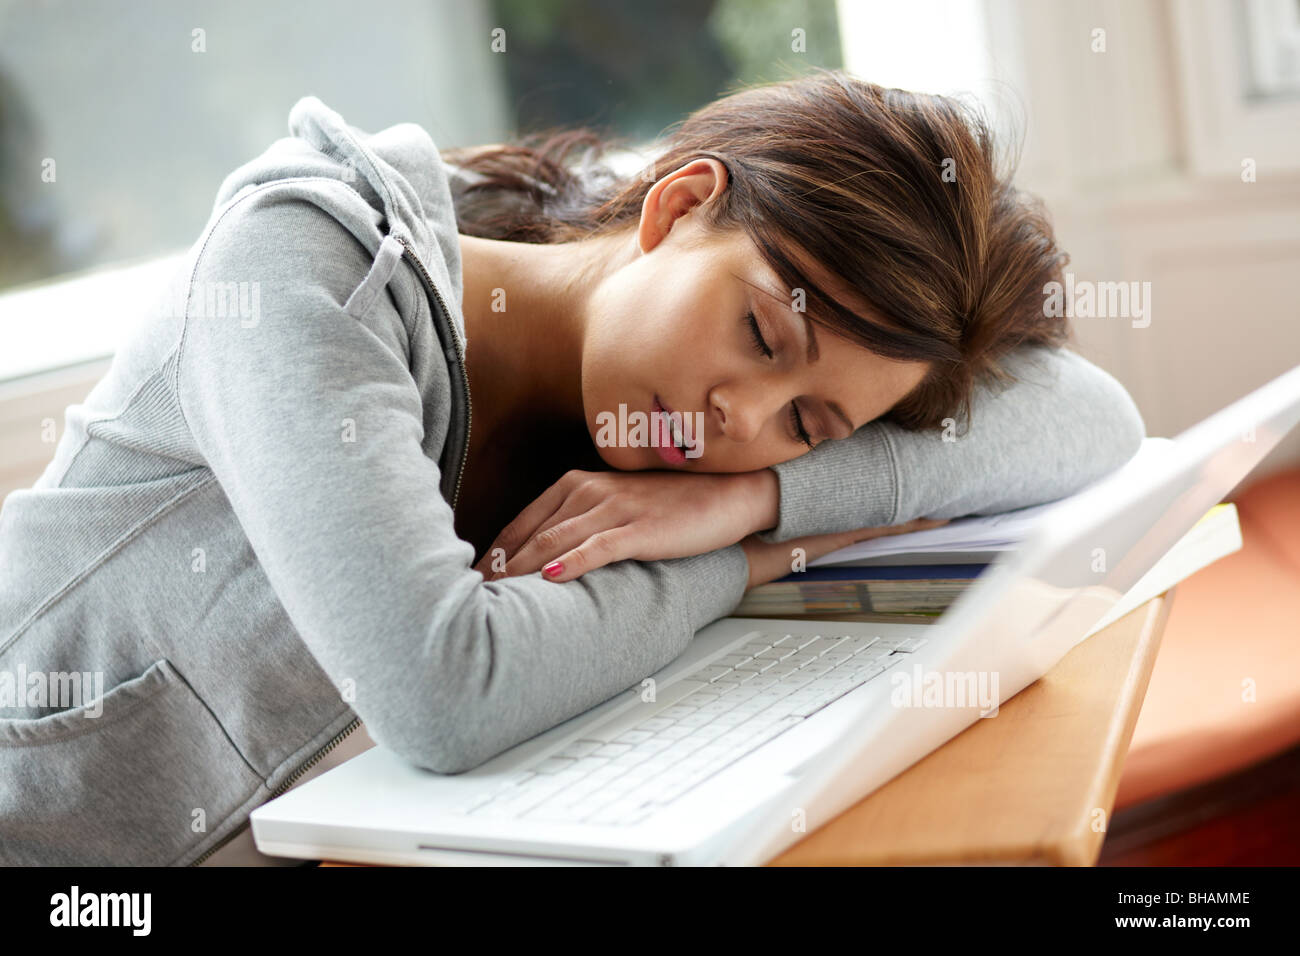 Jeune fille endormie sur l'ordinateur portable Banque D'Images